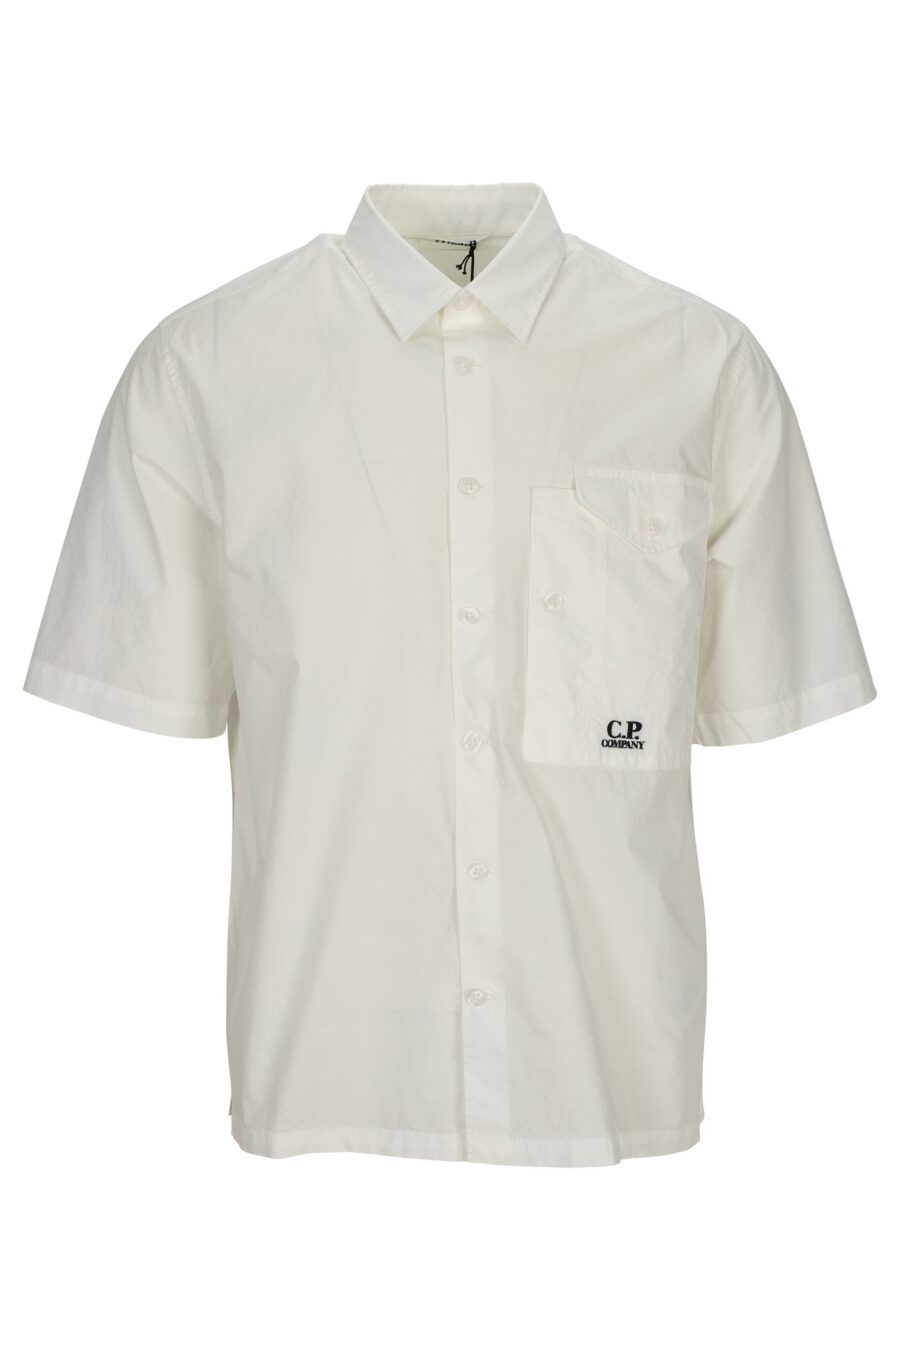 Chemise blanche à manches courtes avec poche et mini logo - 7620943694826